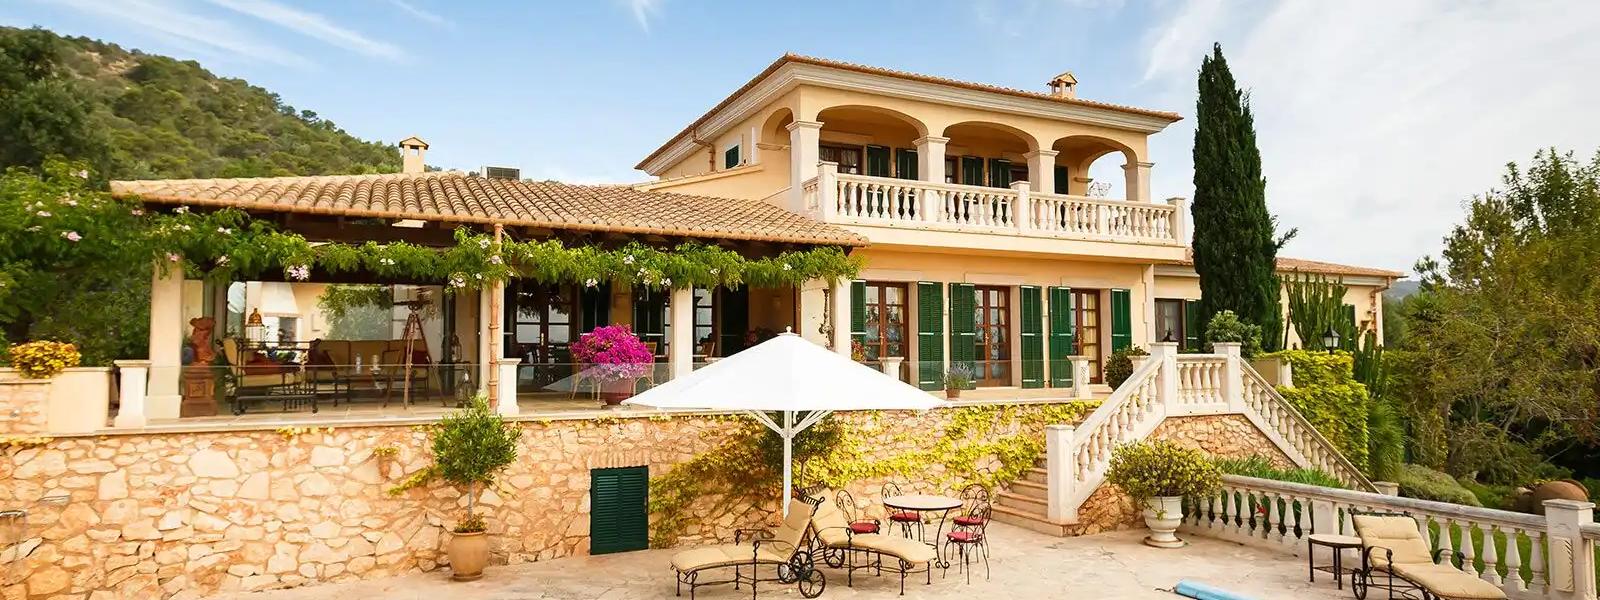 Luxusurlaub in exklusiven Fincas auf Mallorca - BELLEVUE Ferienhaus